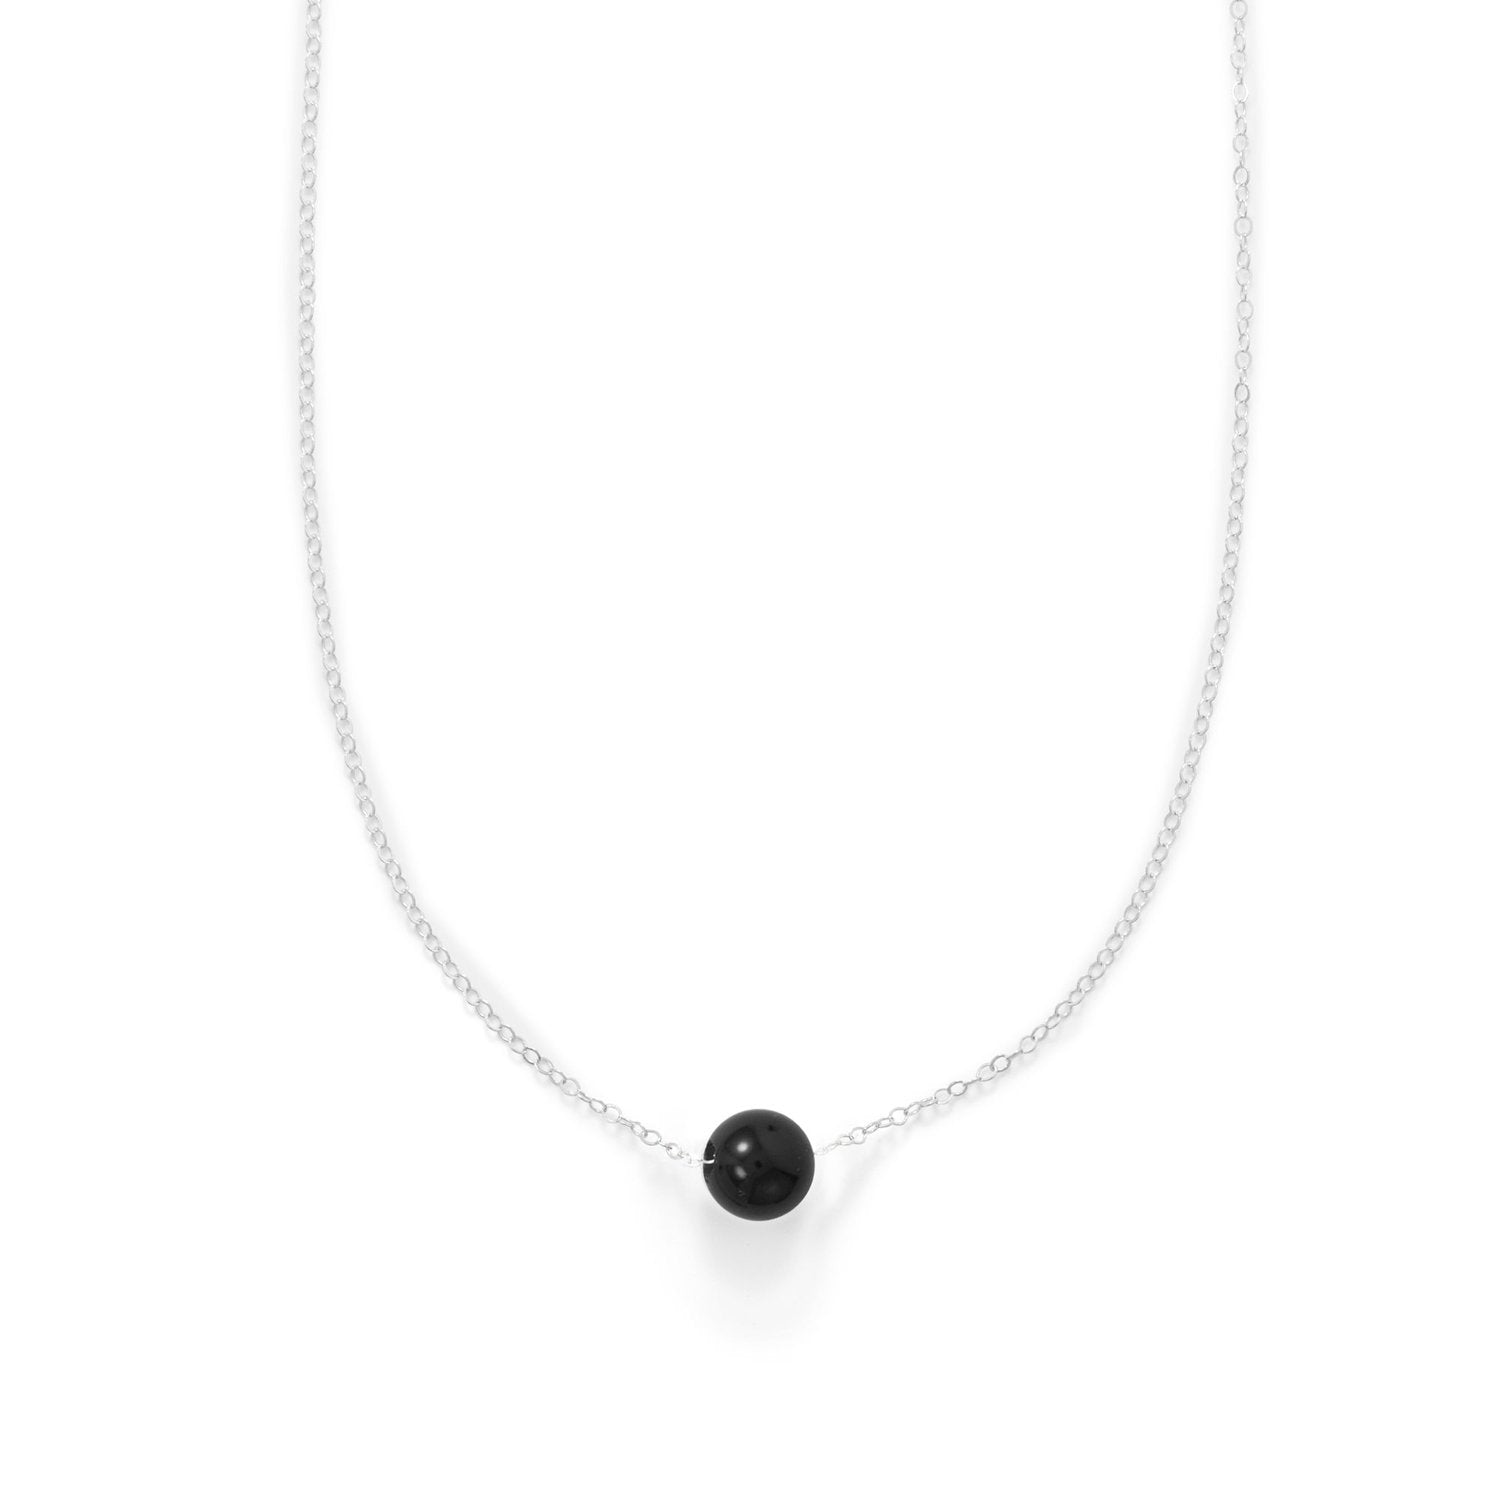 16" + 2" Floating Black Onyx Bead Necklace - Joyeria Lady